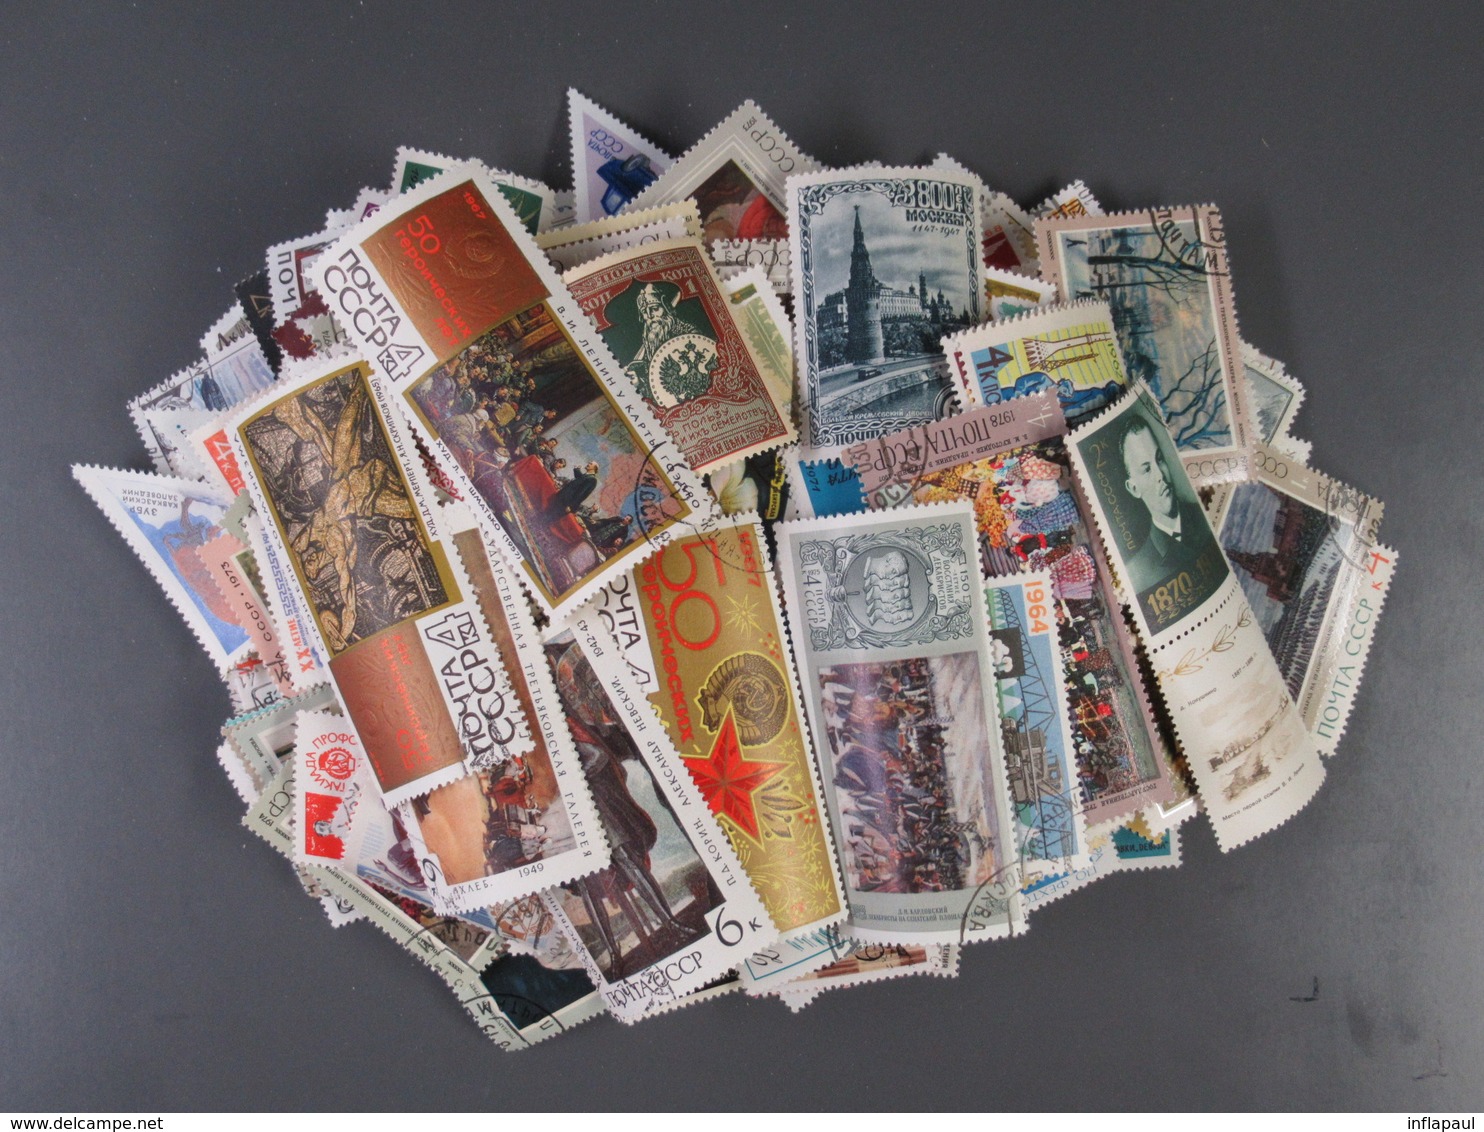 1000 verschiedene Briefmarken Sowjetunion und 50 Blöcke gestemepelt